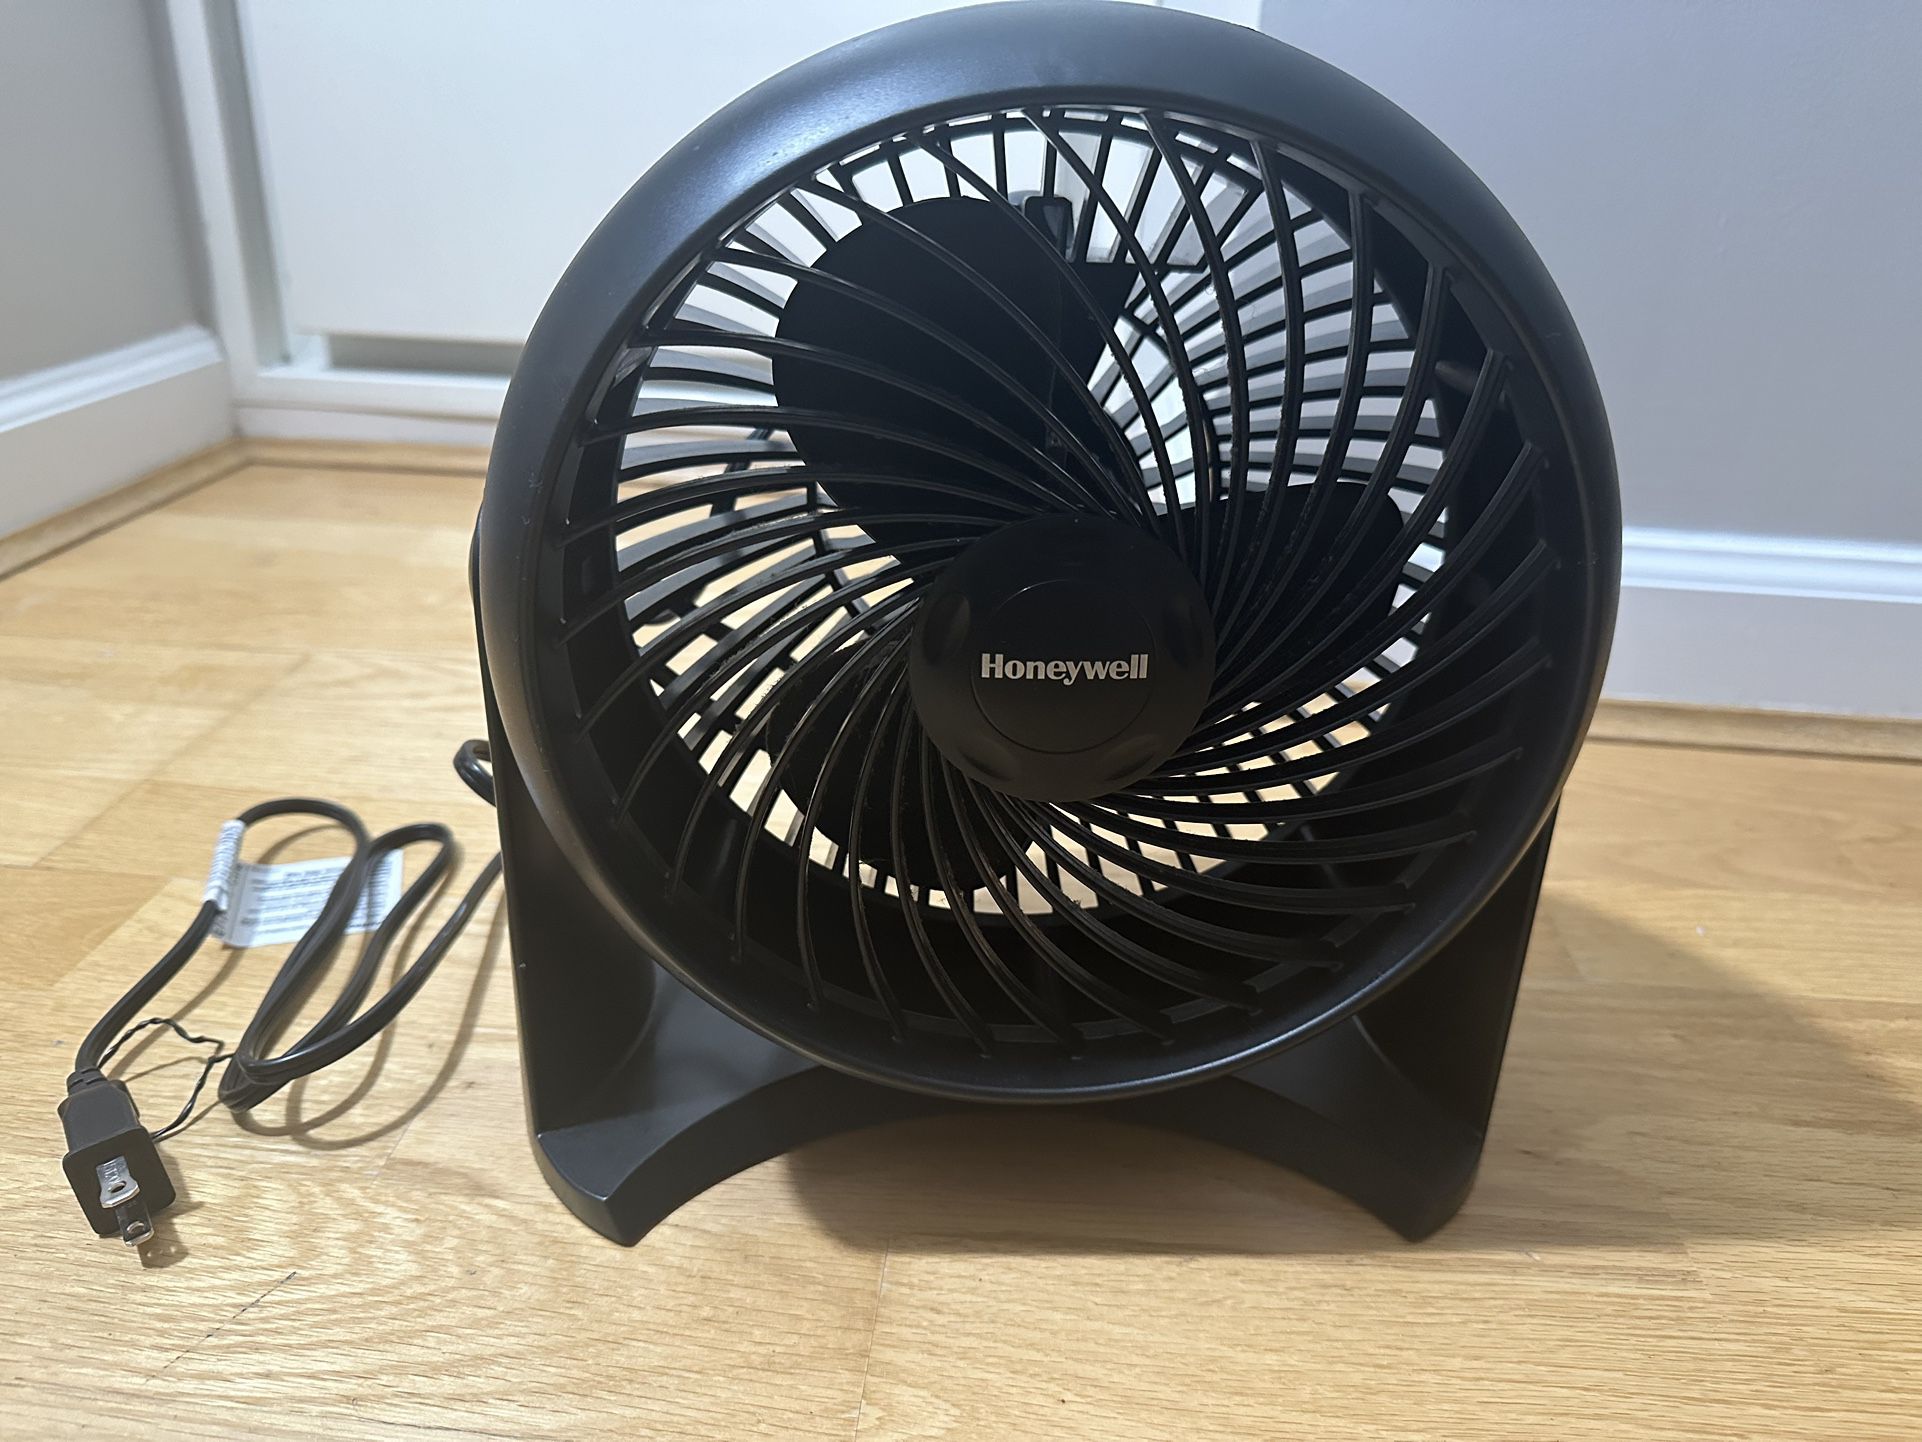 Honeywell Turbo power Table Fan